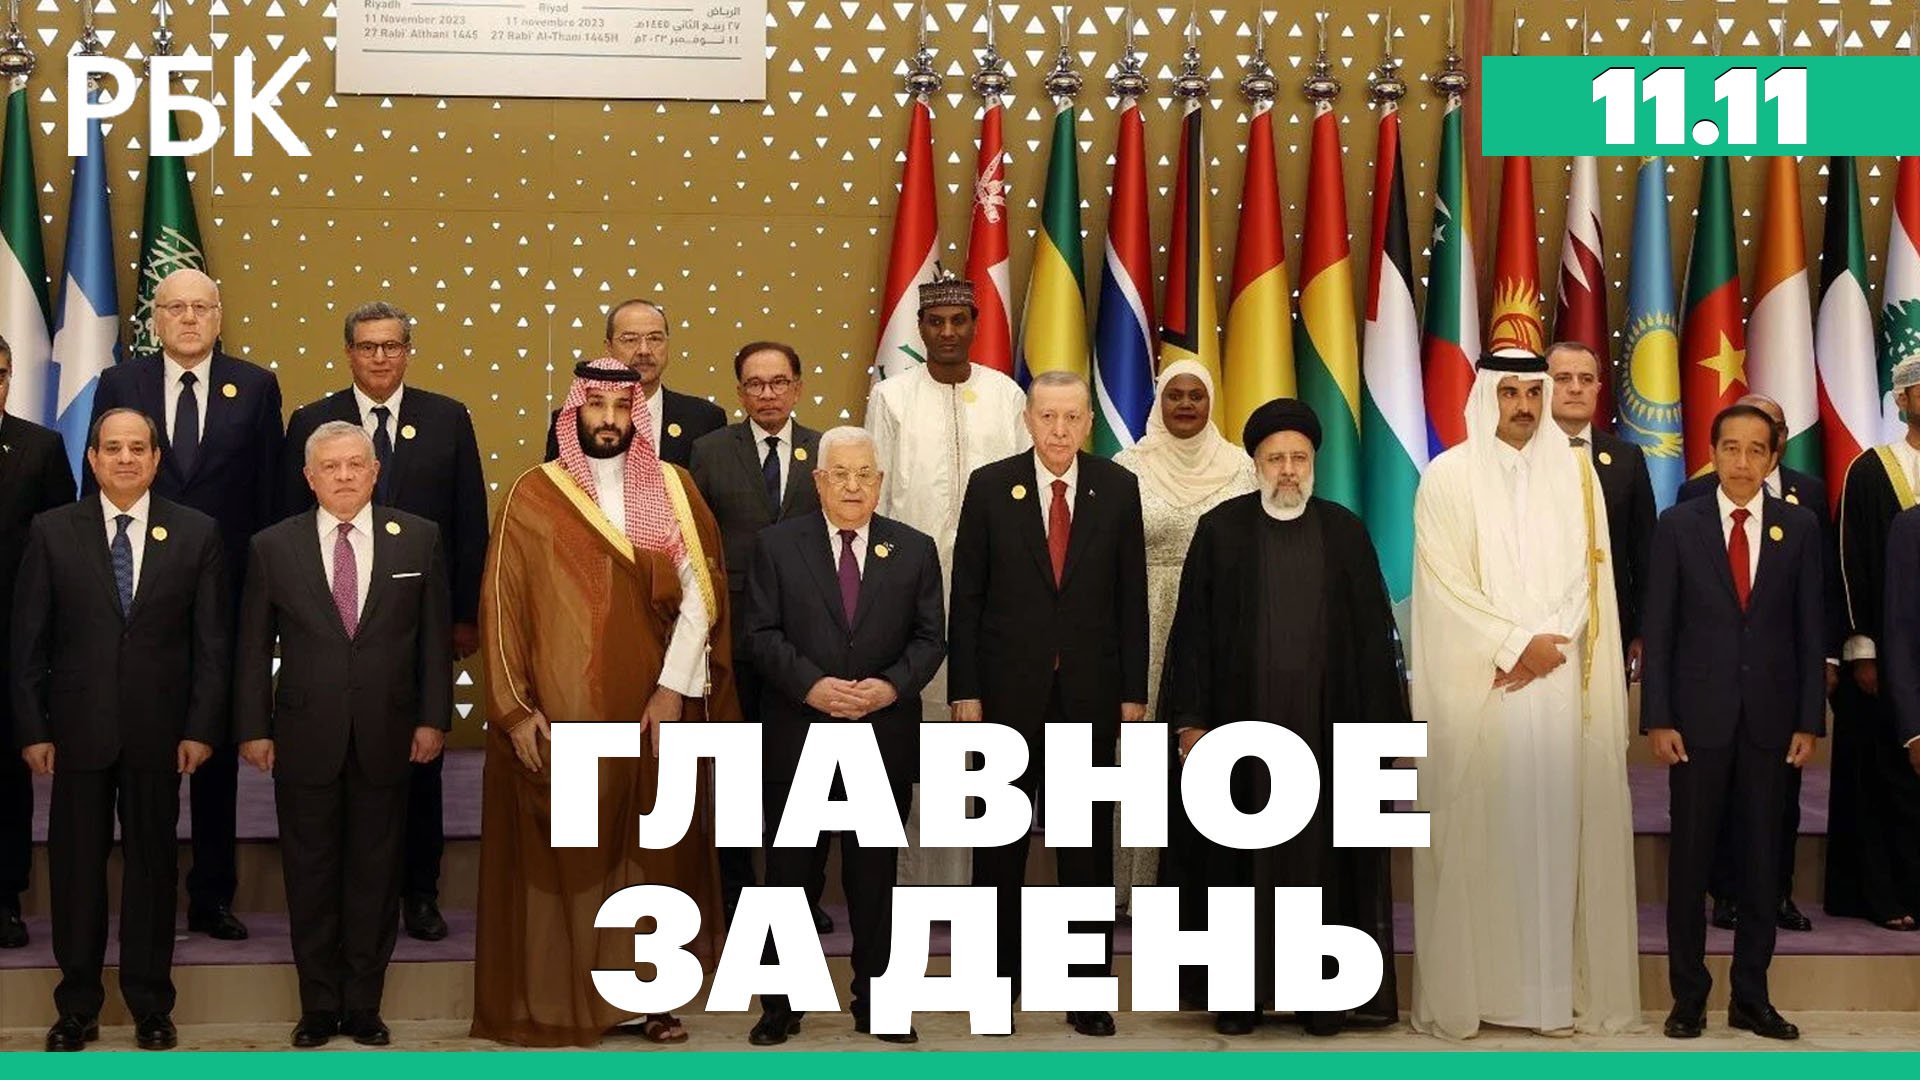 Саммит по войне Израиля с ХАМАС в Саудовской Аравии, Боррель о поддержке Украины. Главное за день